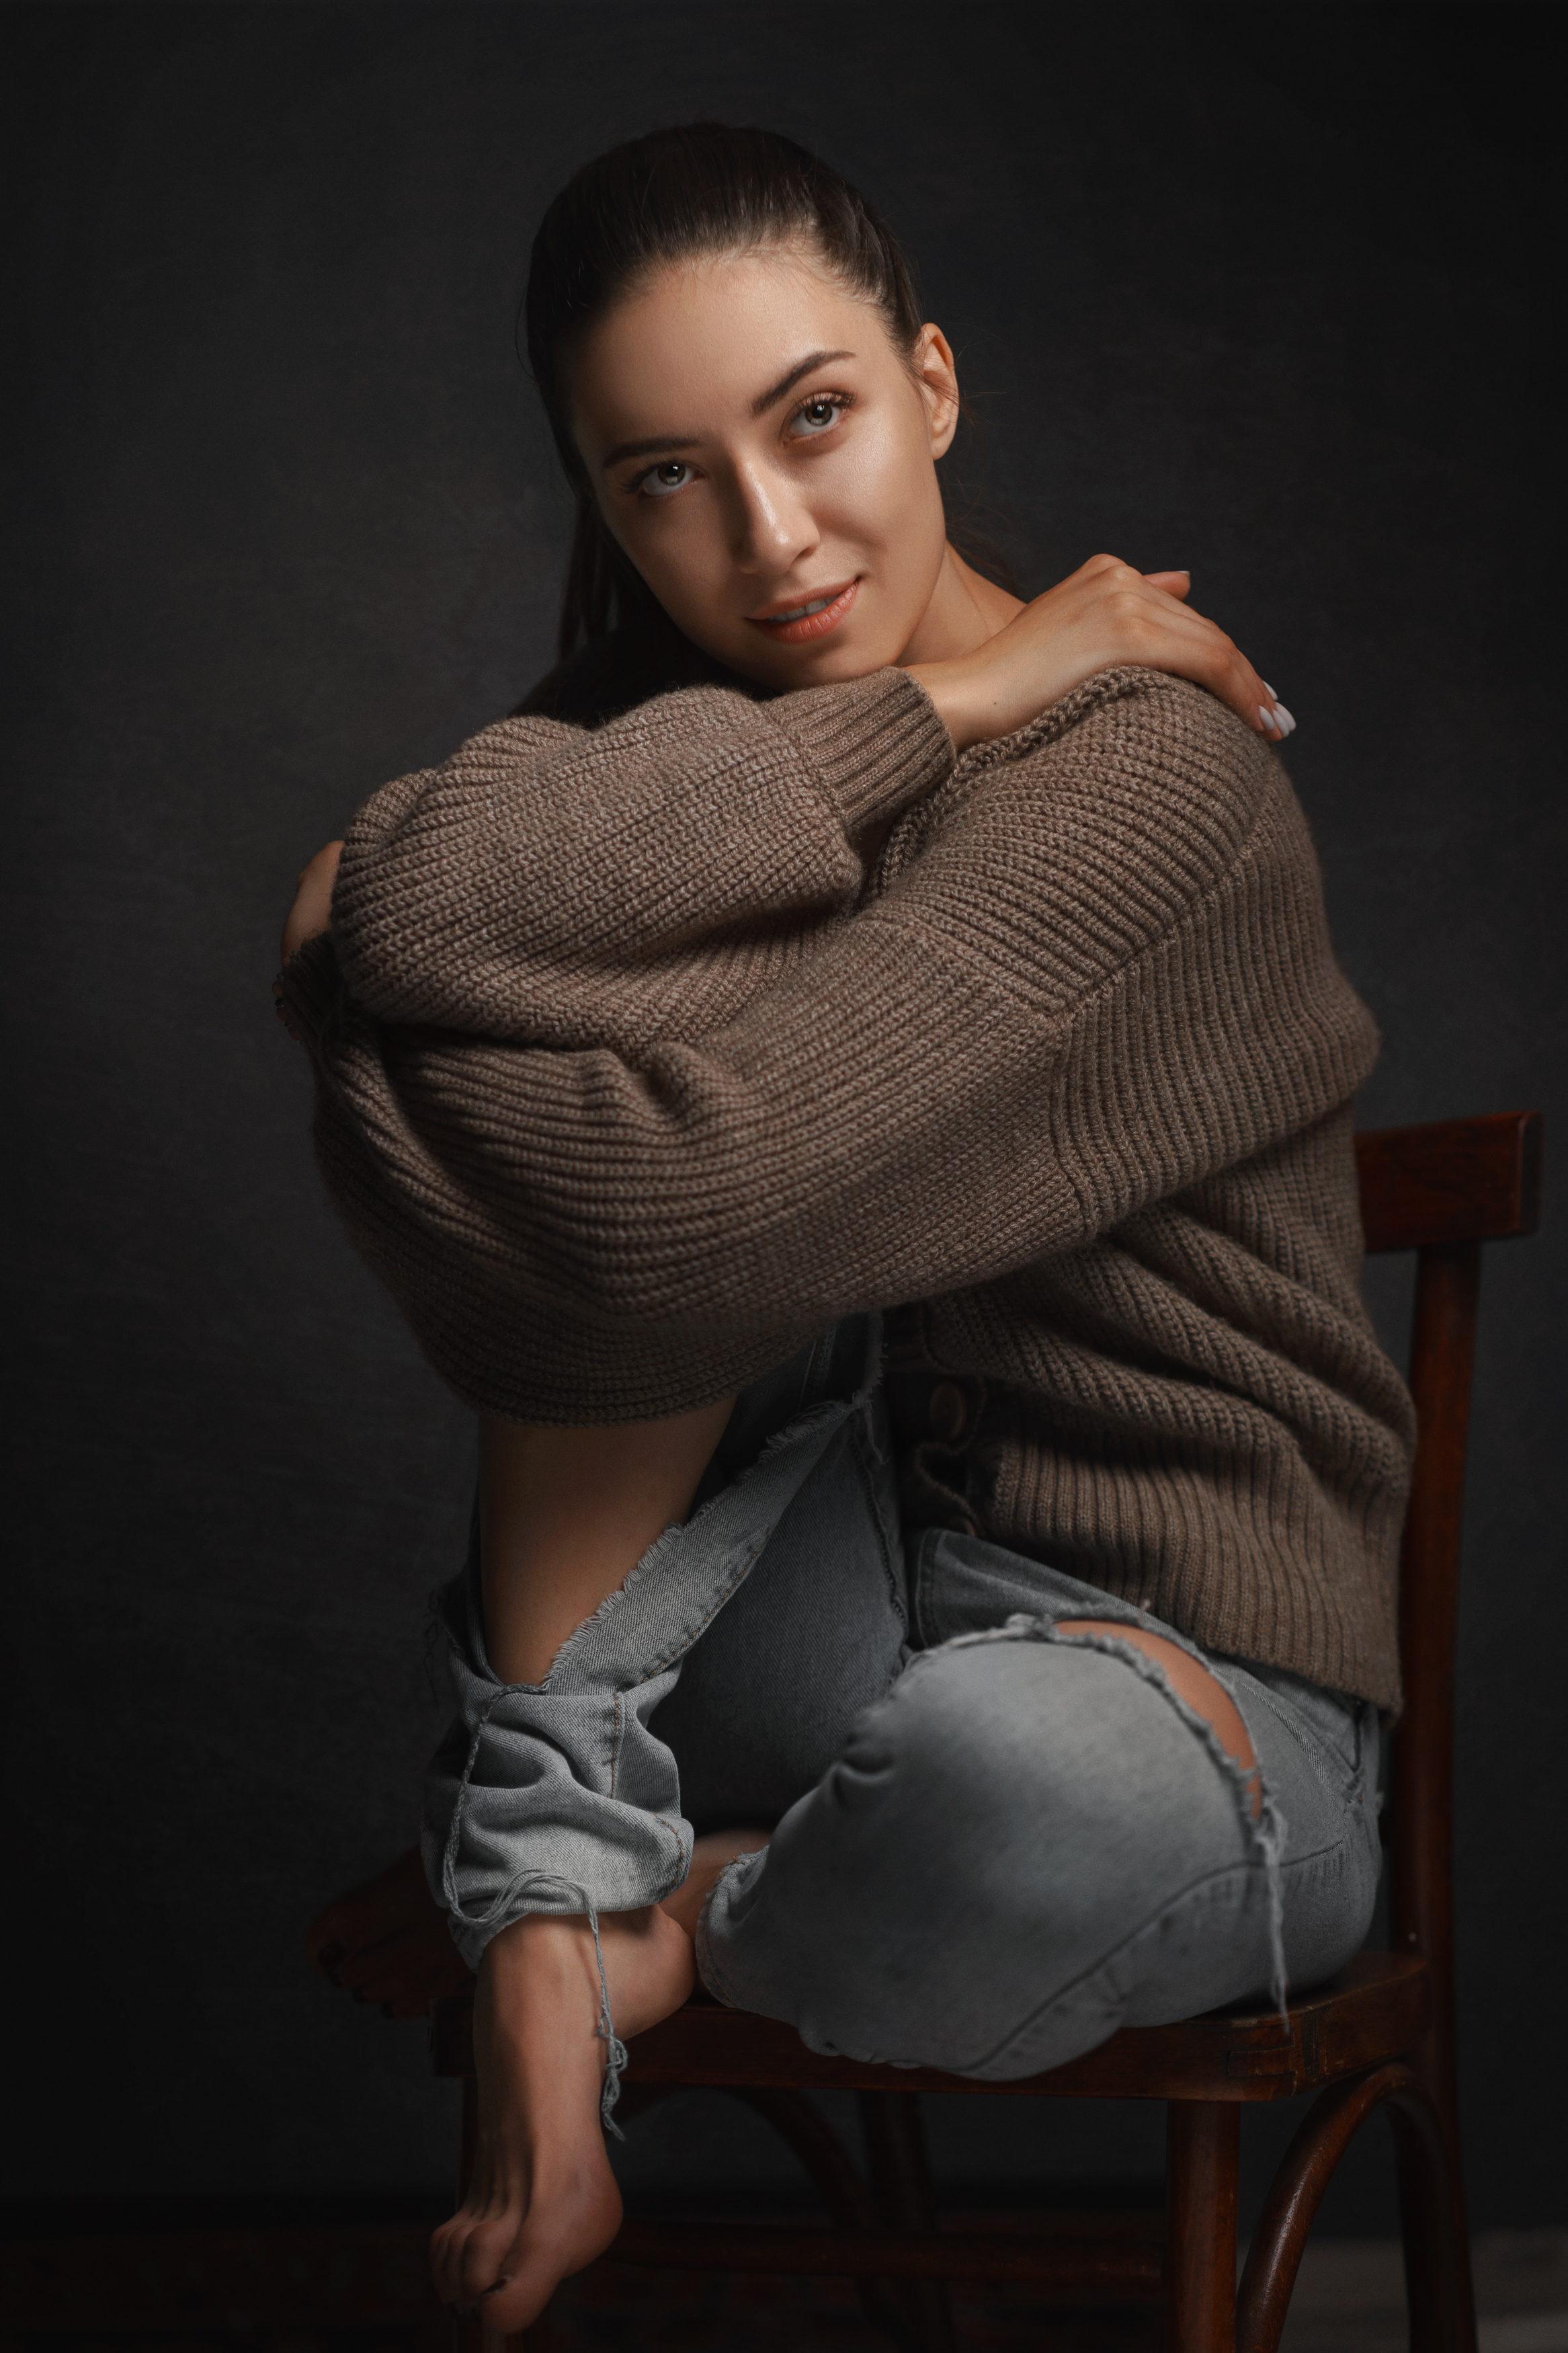 Aleksey Gurylev Women Brunette Looking Up Smirk Sweater Jeans Barefoot Chair 2333x3500